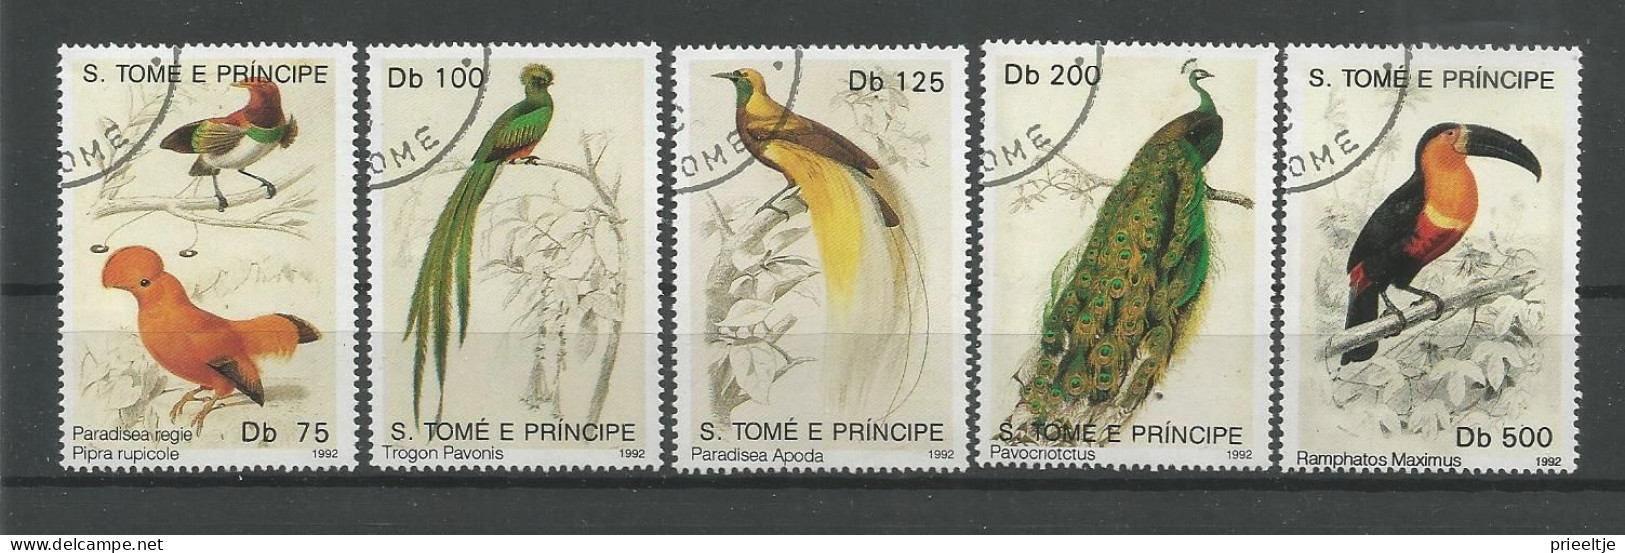 St Tome E Principe 1992 Birds  Y.T. 1099/1103 (0) - São Tomé Und Príncipe